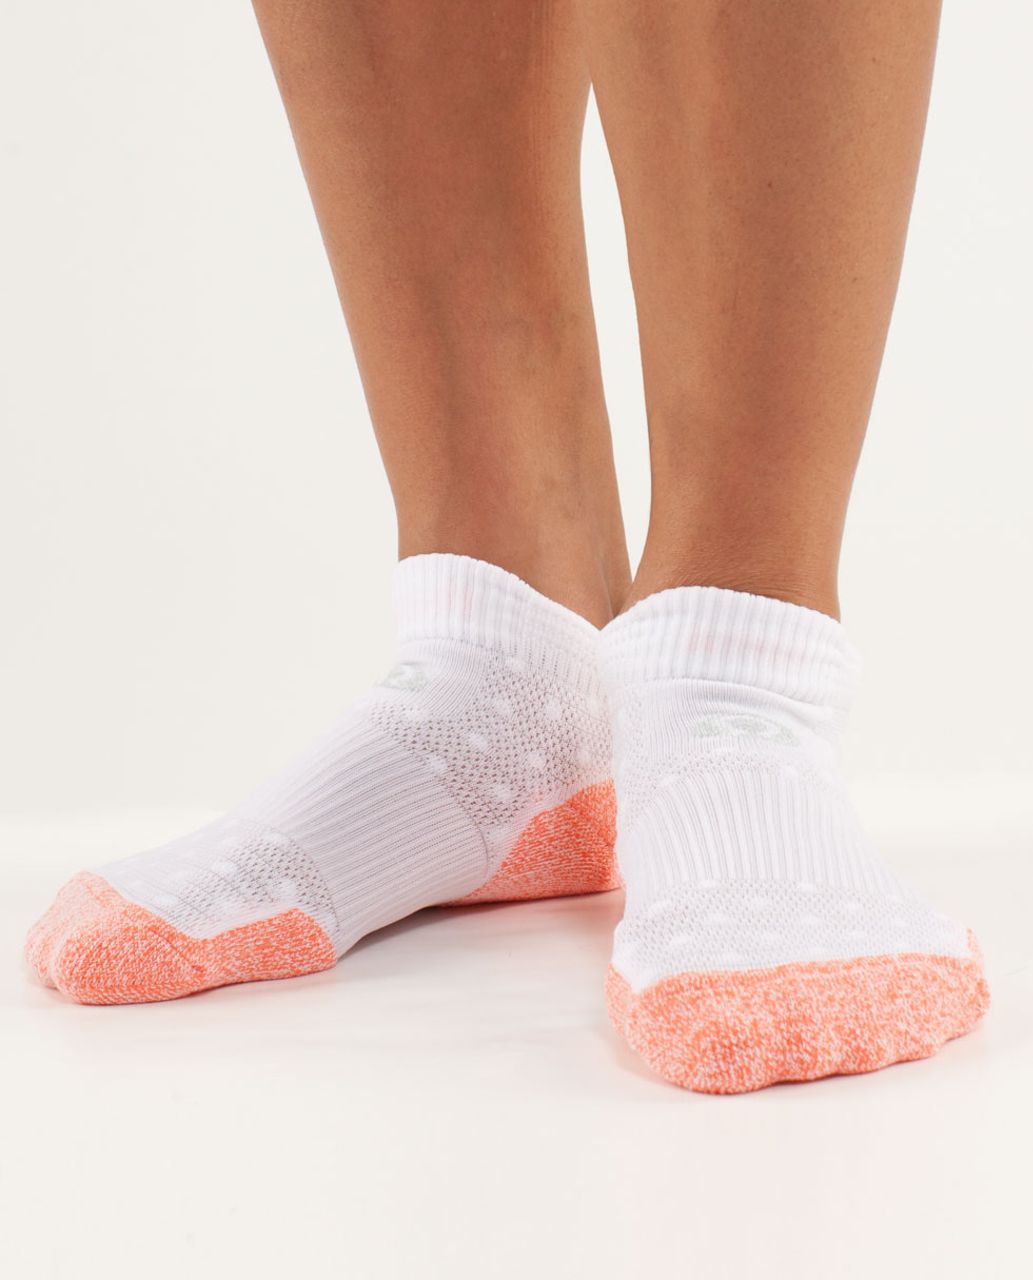 Lululemon Women's Ultimate Padded Run Sock - Pop Orange / White White High Noon Dot